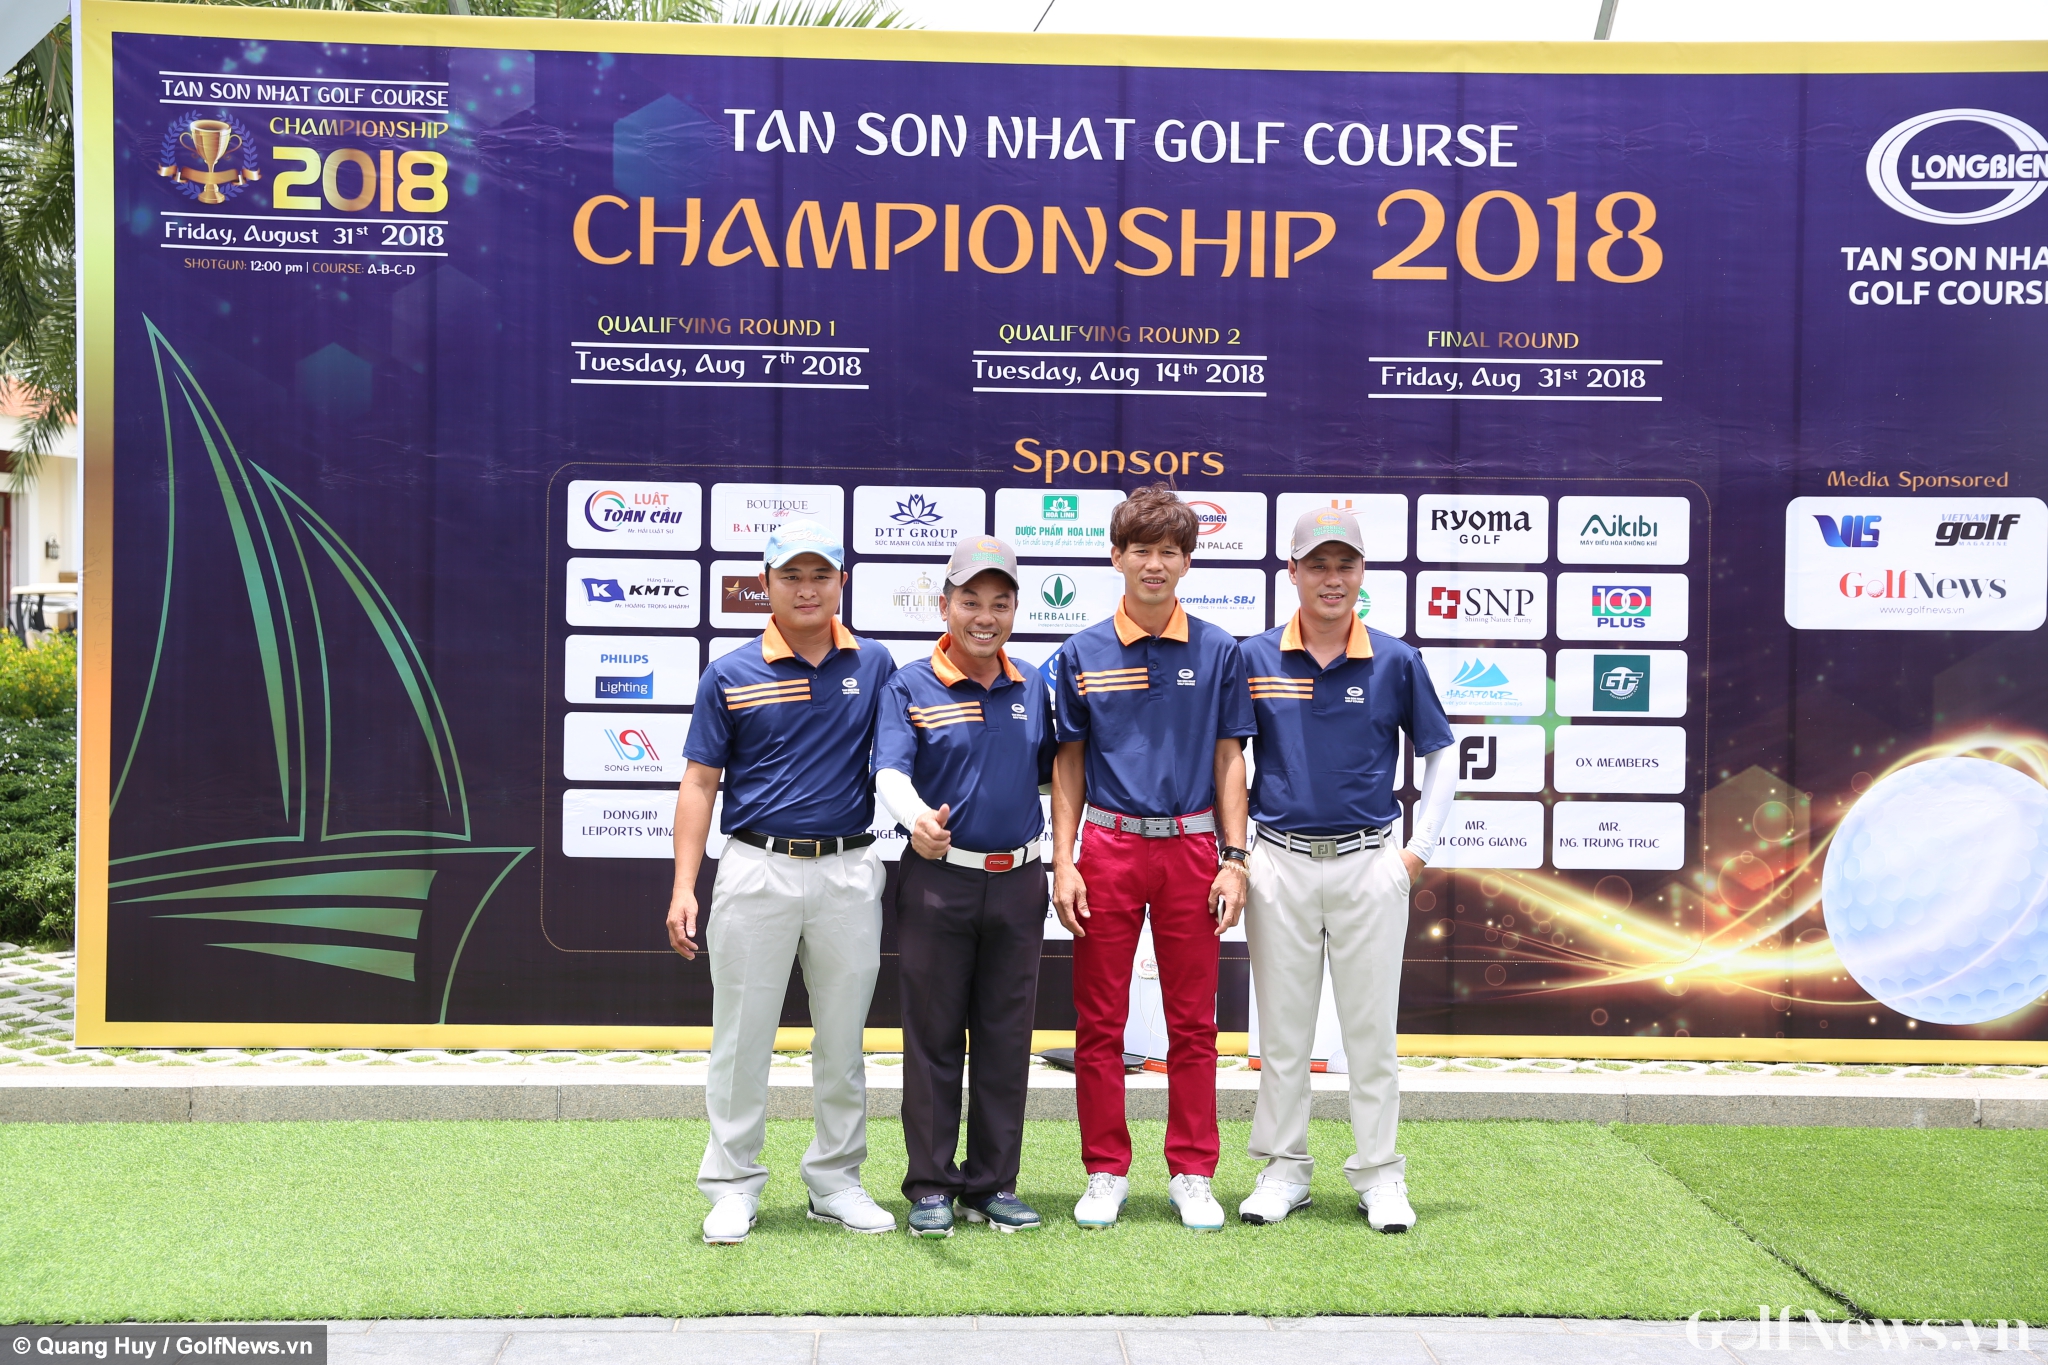 Toàn cảnh Giải Tan Son Nhat Golf Course Championship 2018